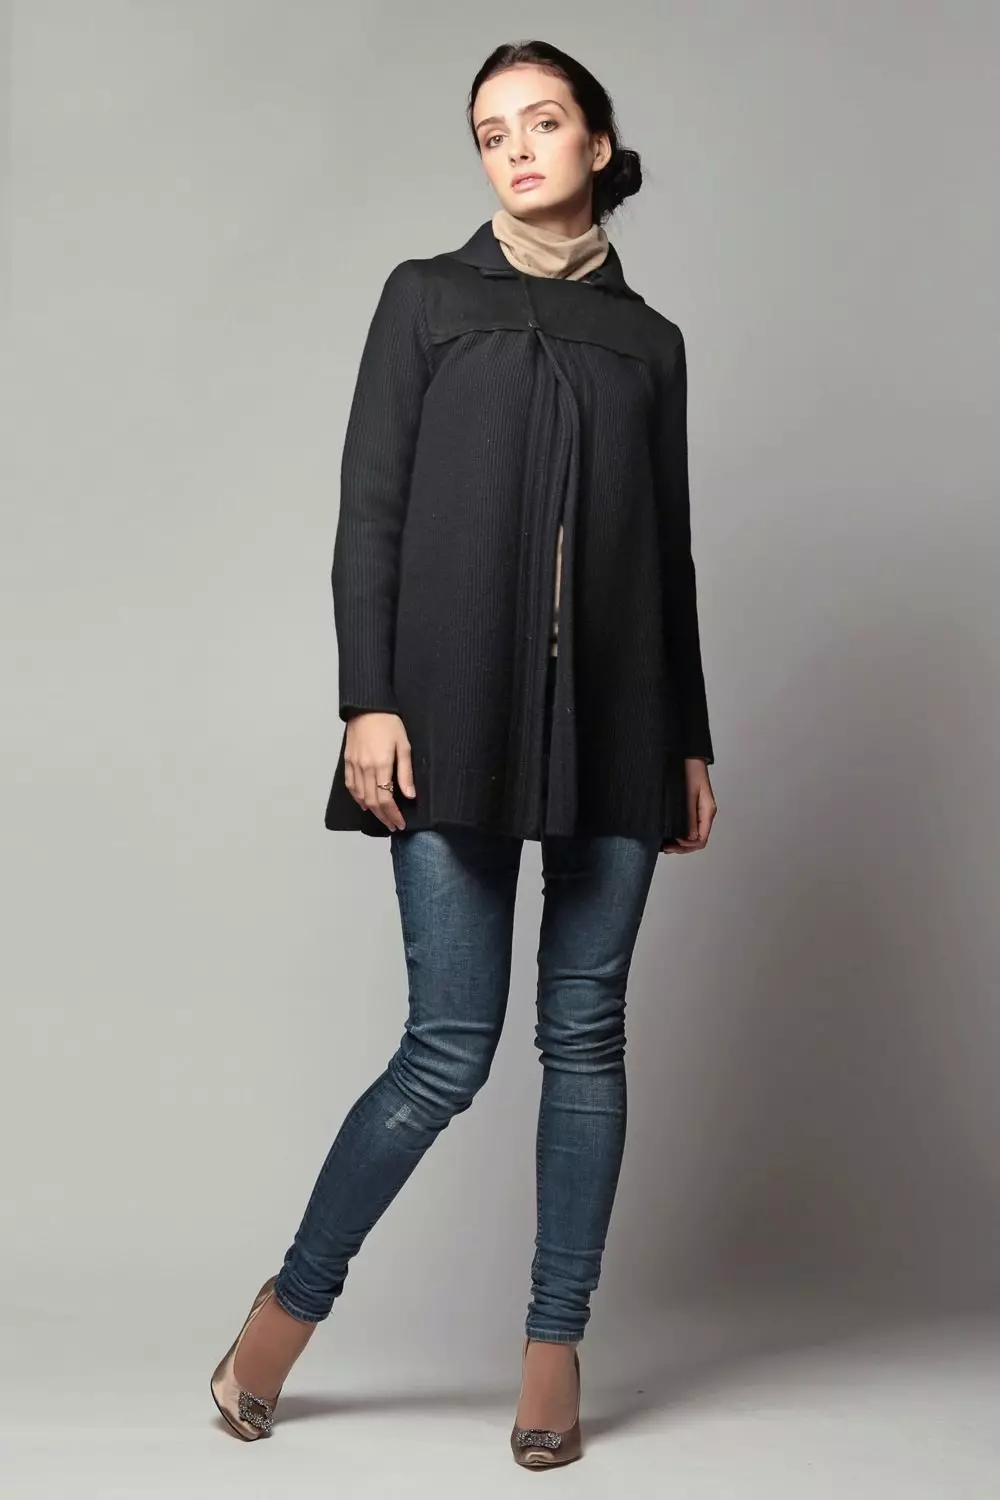 Žena černý kabát (172 fotografií): dlouhé, krátké, s kapucí, černé a bílé, rovné, kožené rukávy, fit, kůže 611_57